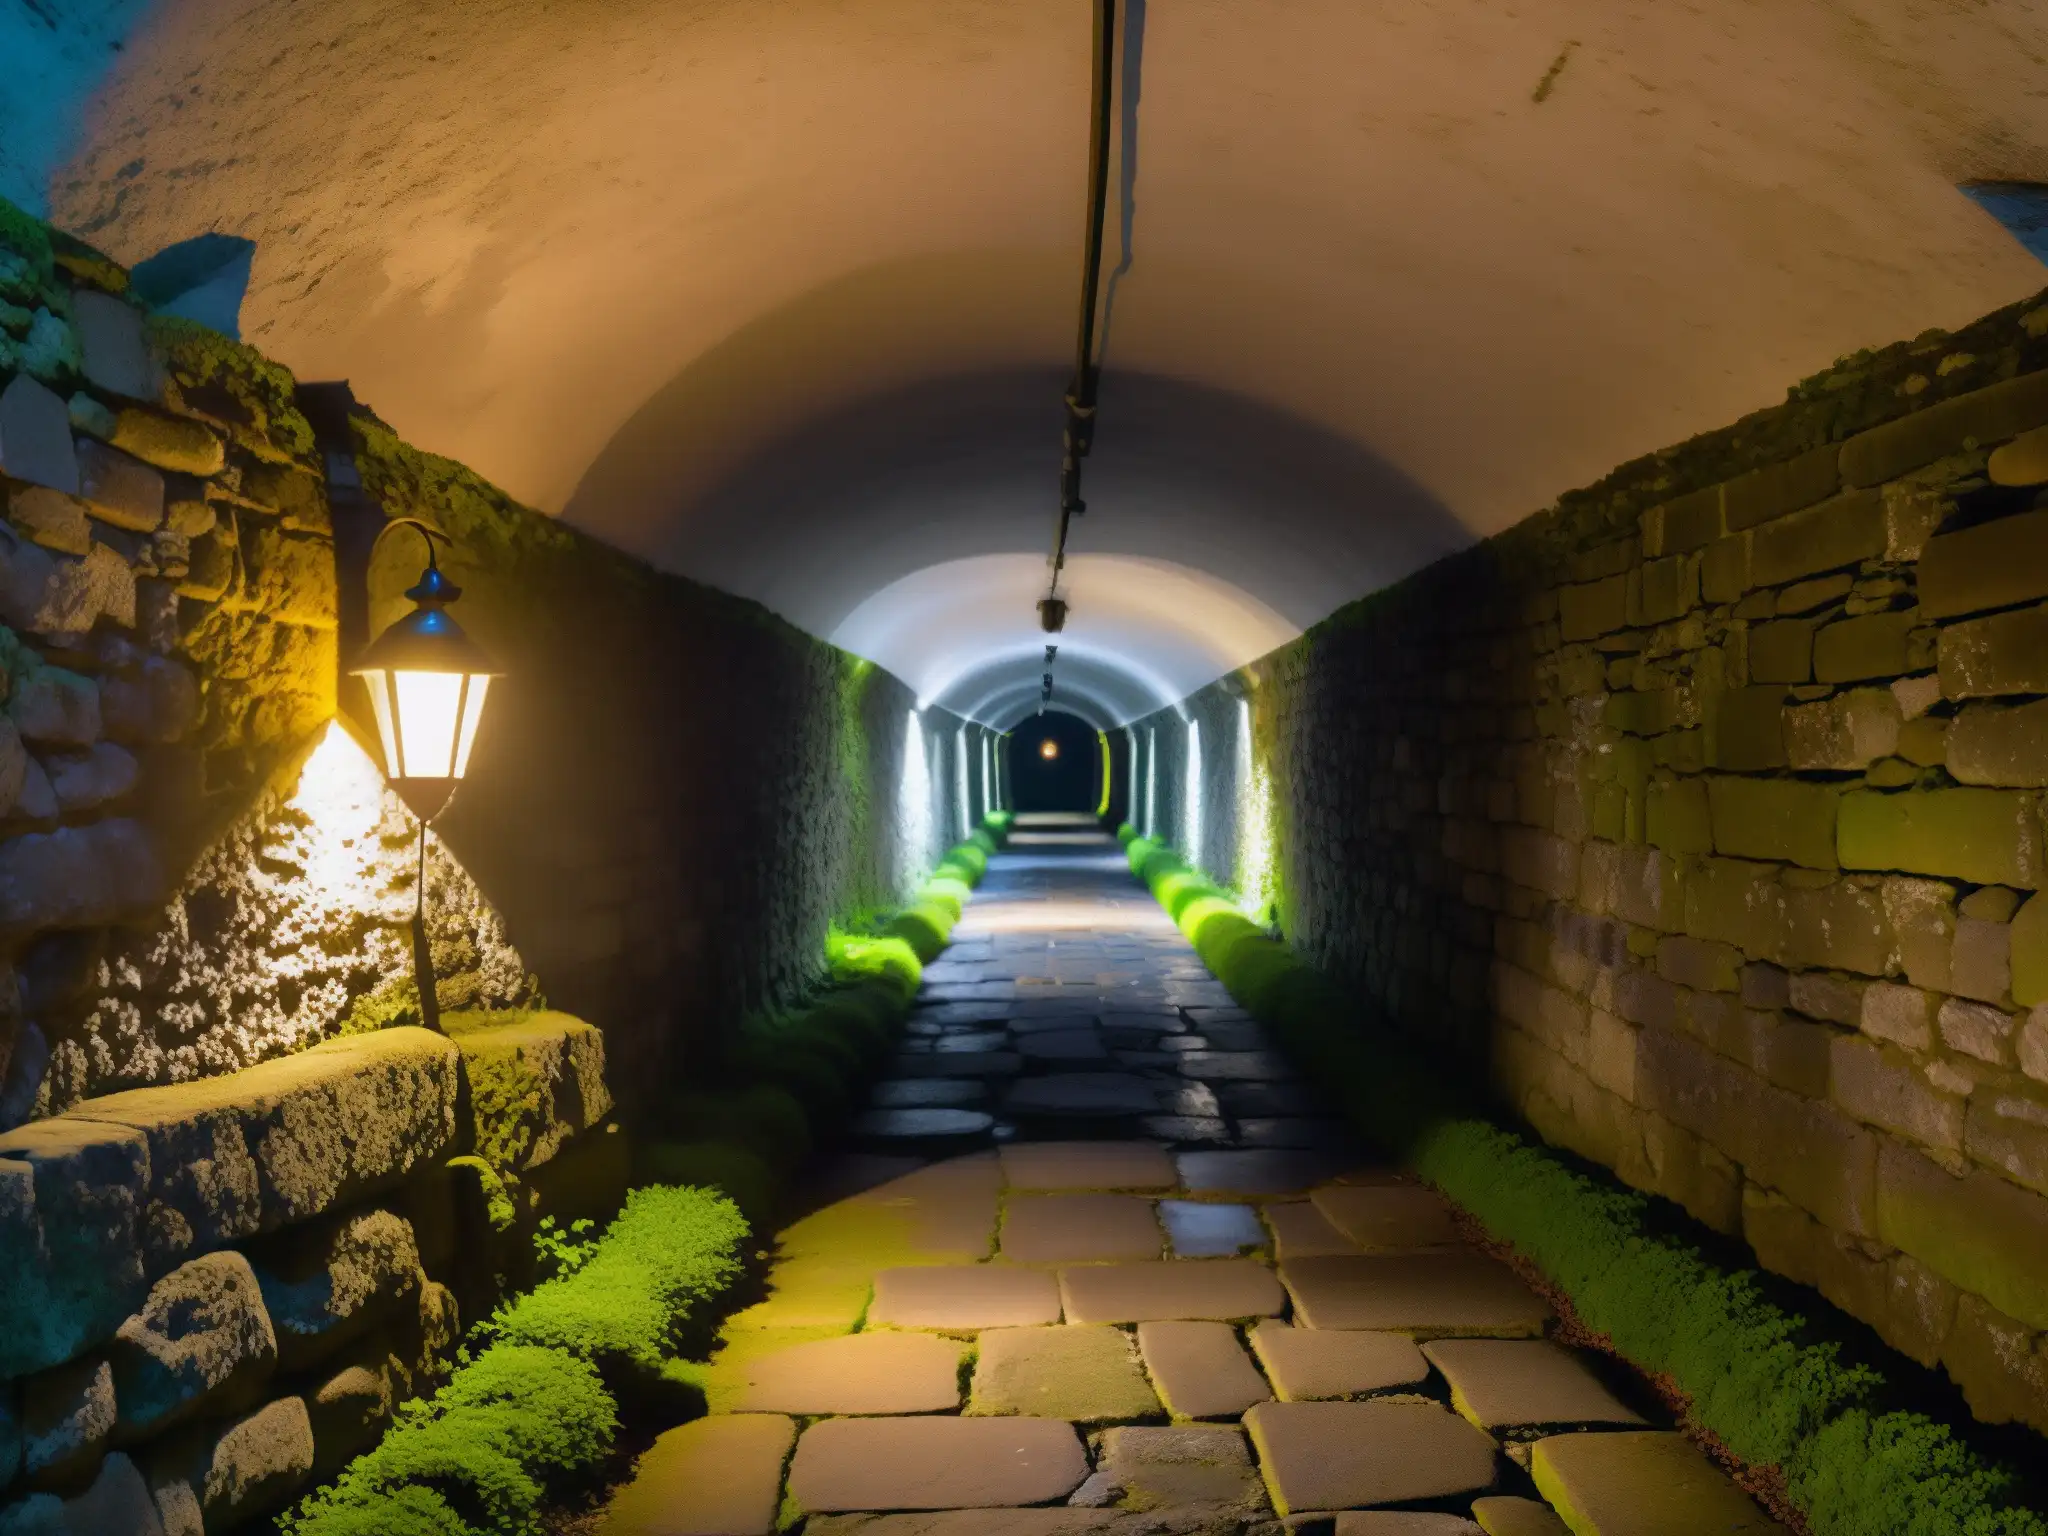 Un misterioso túnel subterráneo iluminado por una linterna titilante, con paredes de piedra cubiertas de musgo